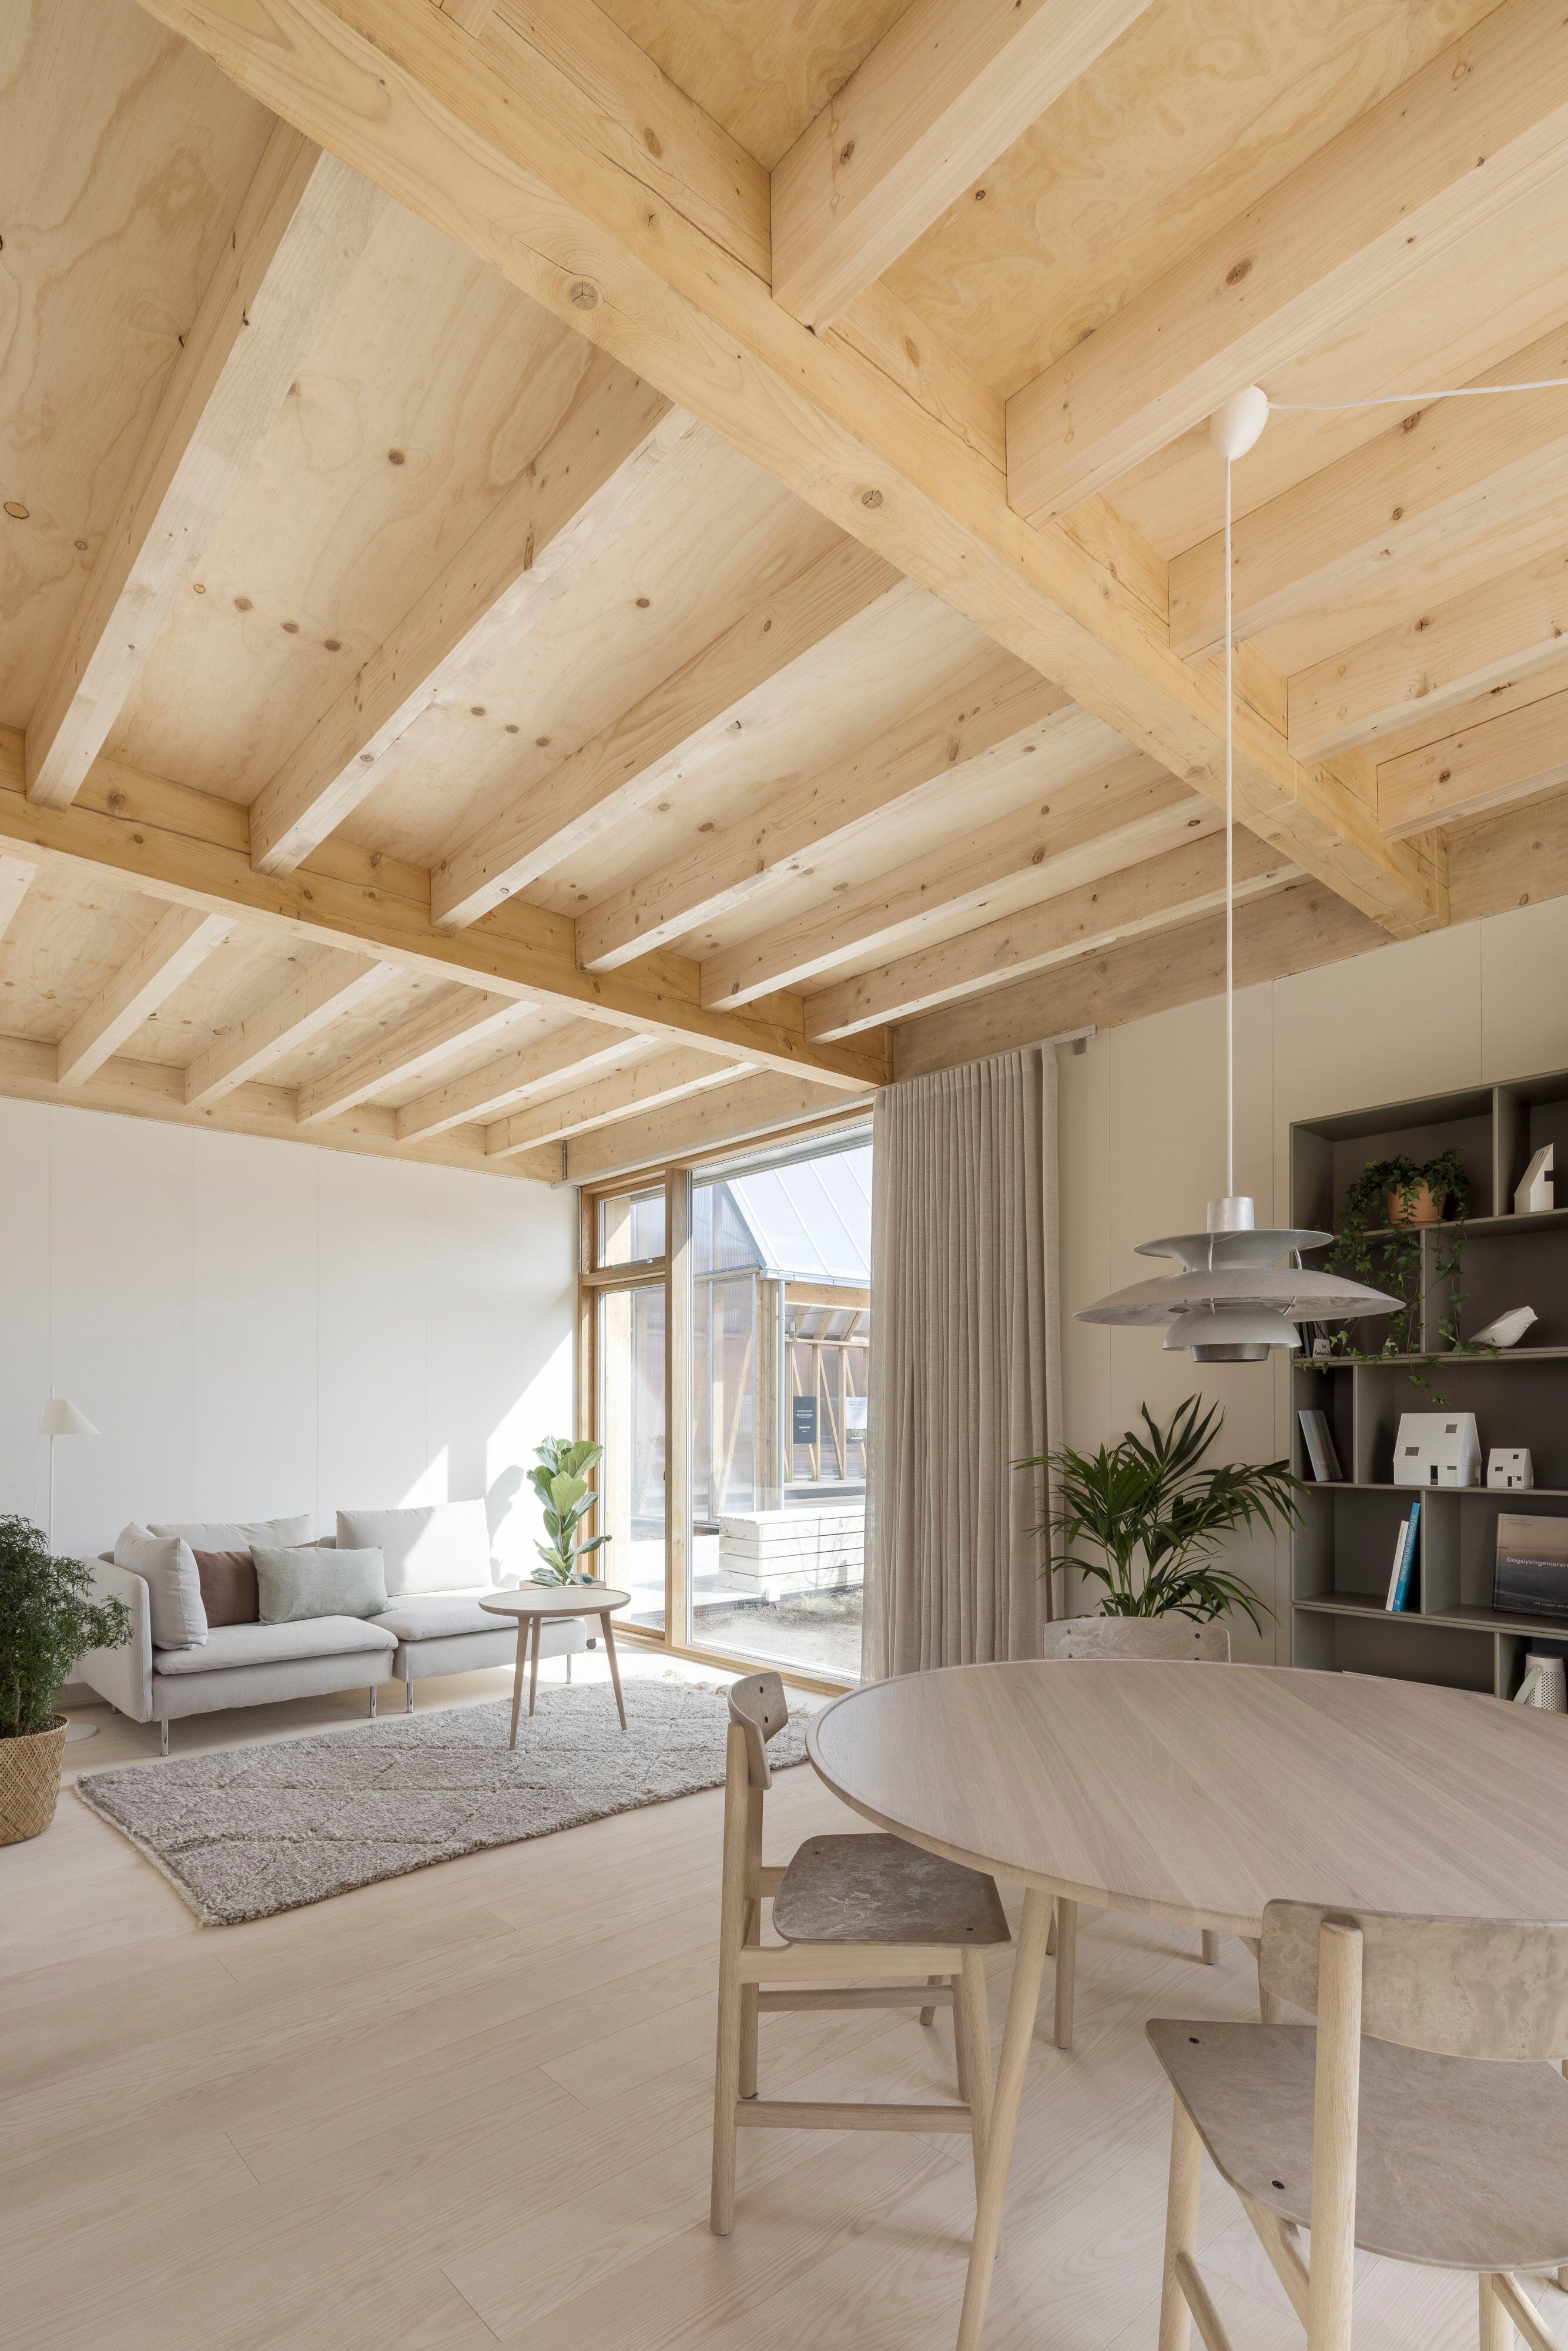 Los interiores de estas viviendas experimentales reflejan la vocación práctica del diseño danés.